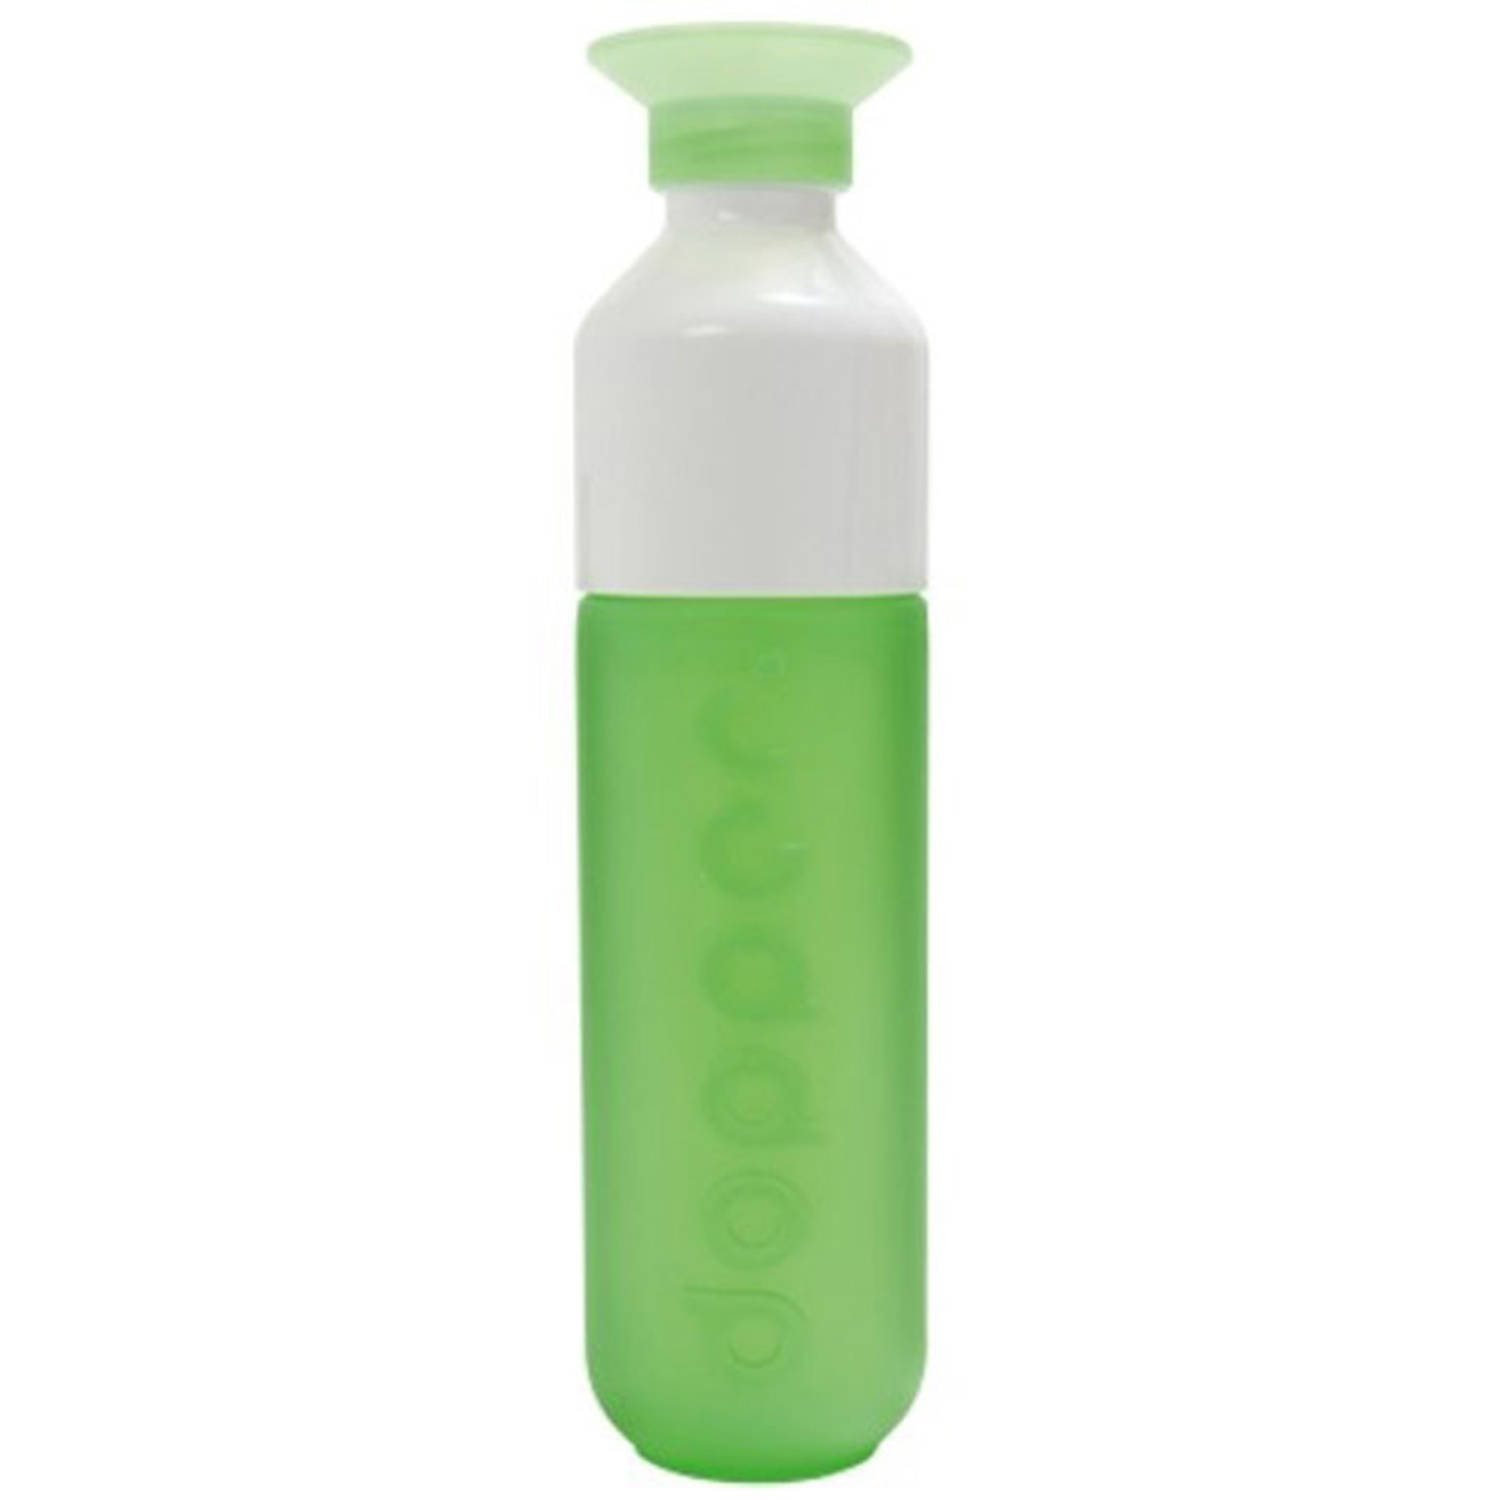 Alternatief voorstel Beschrijvend Chemicaliën Dopper waterfles - groen | Blokker